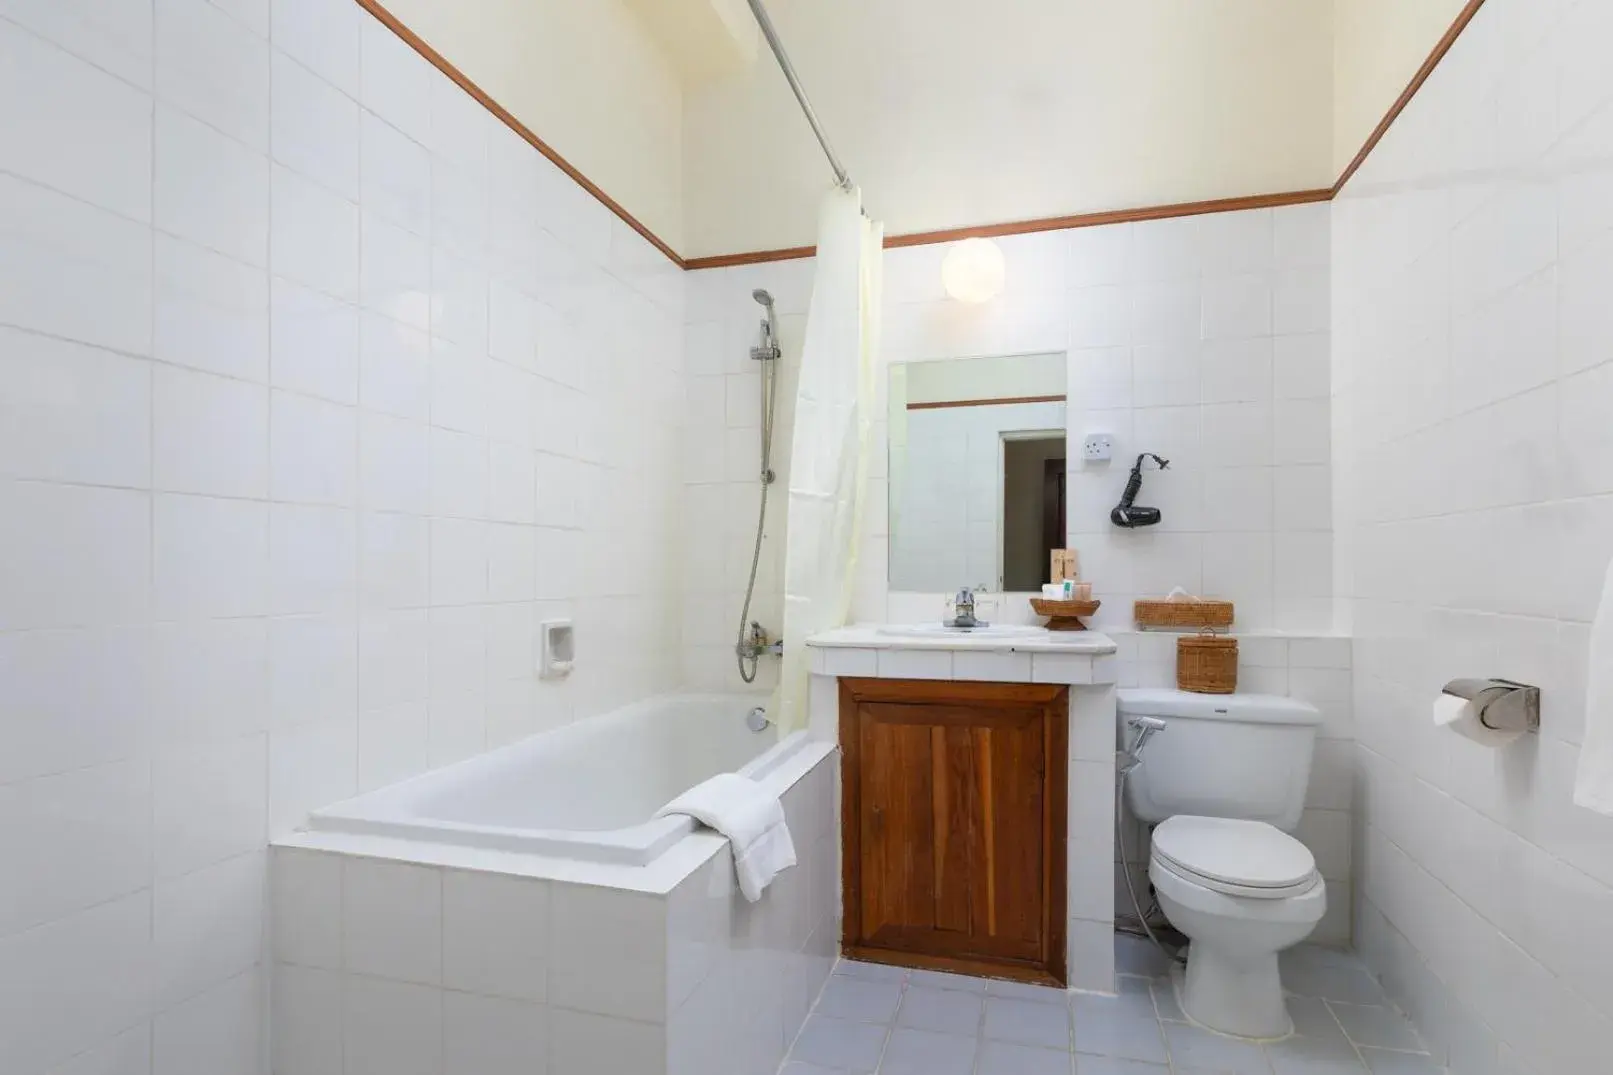 Toilet, Bathroom in Inya Lake Hotel